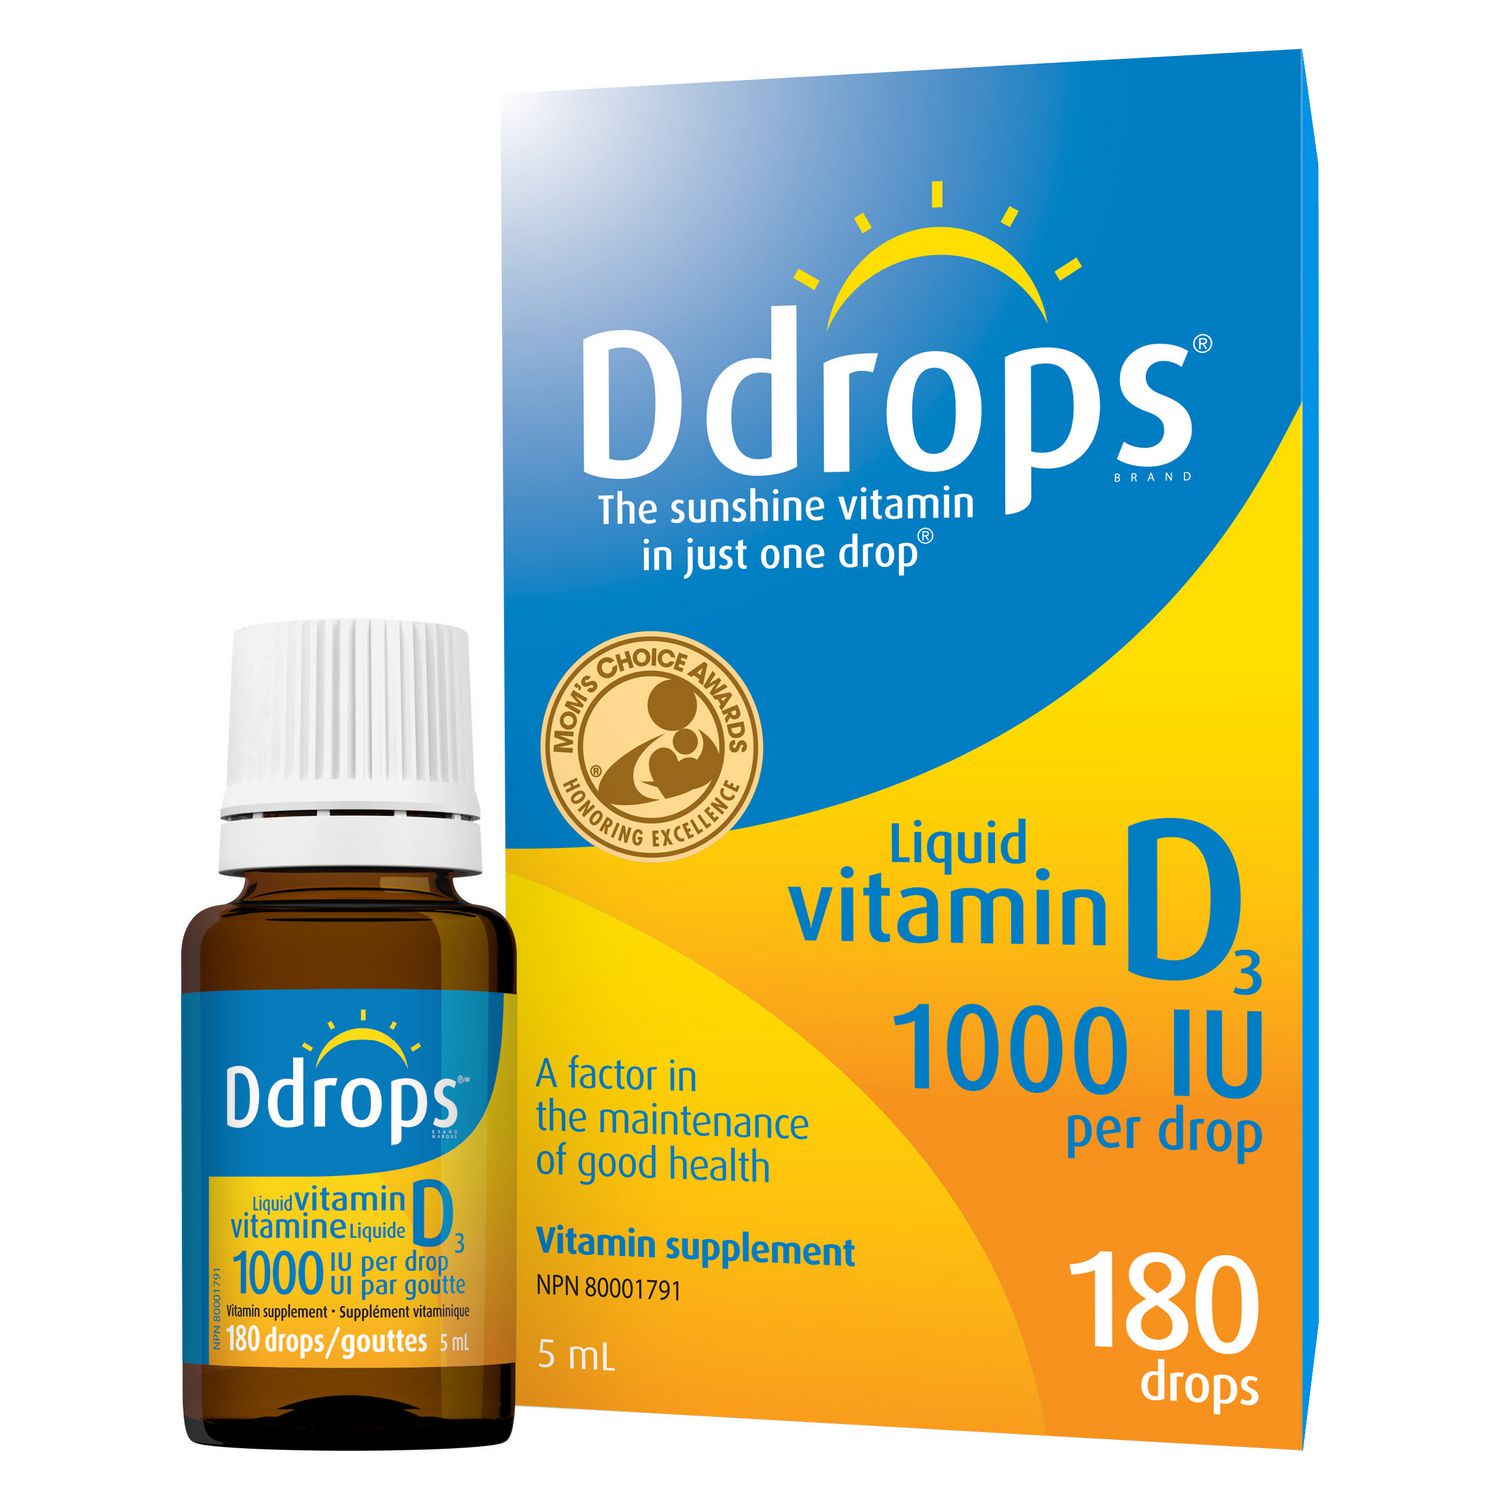 liquid vitamin d